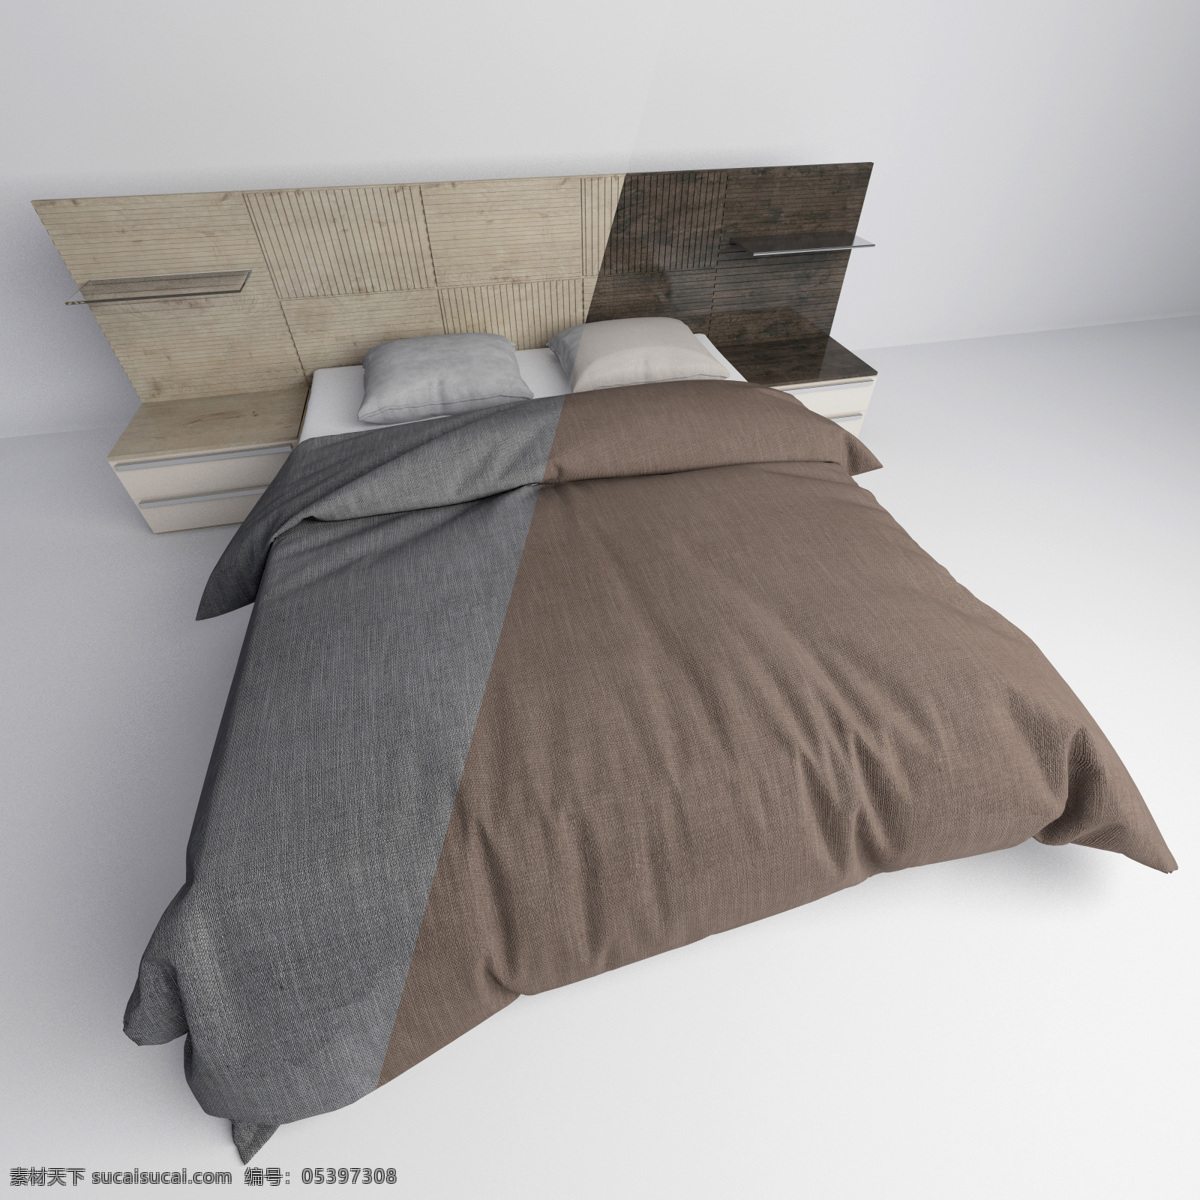 舒适 温暖 双人床 3d 模型 棉被 枕头 3d模型 3d渲染 模型素材